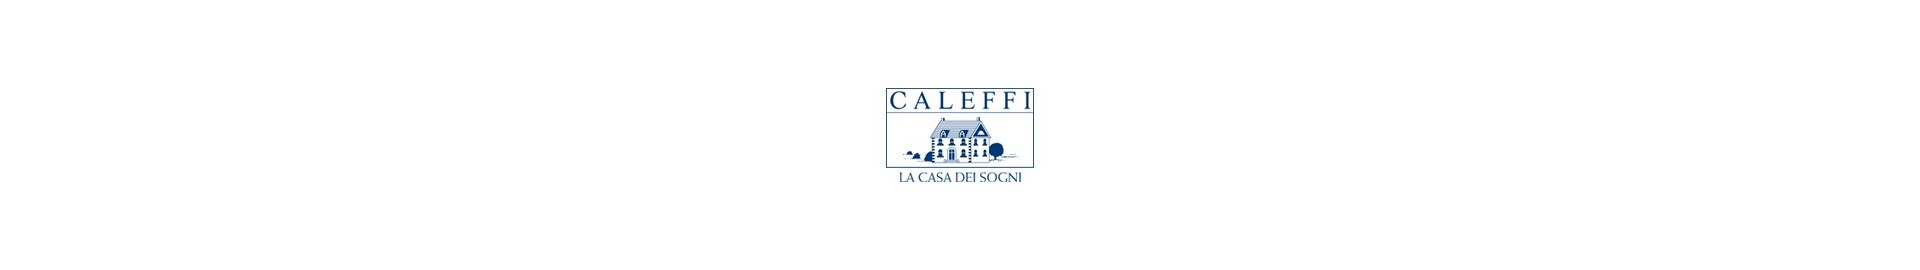 CALEFFI - Rasoline L.F.D. Home